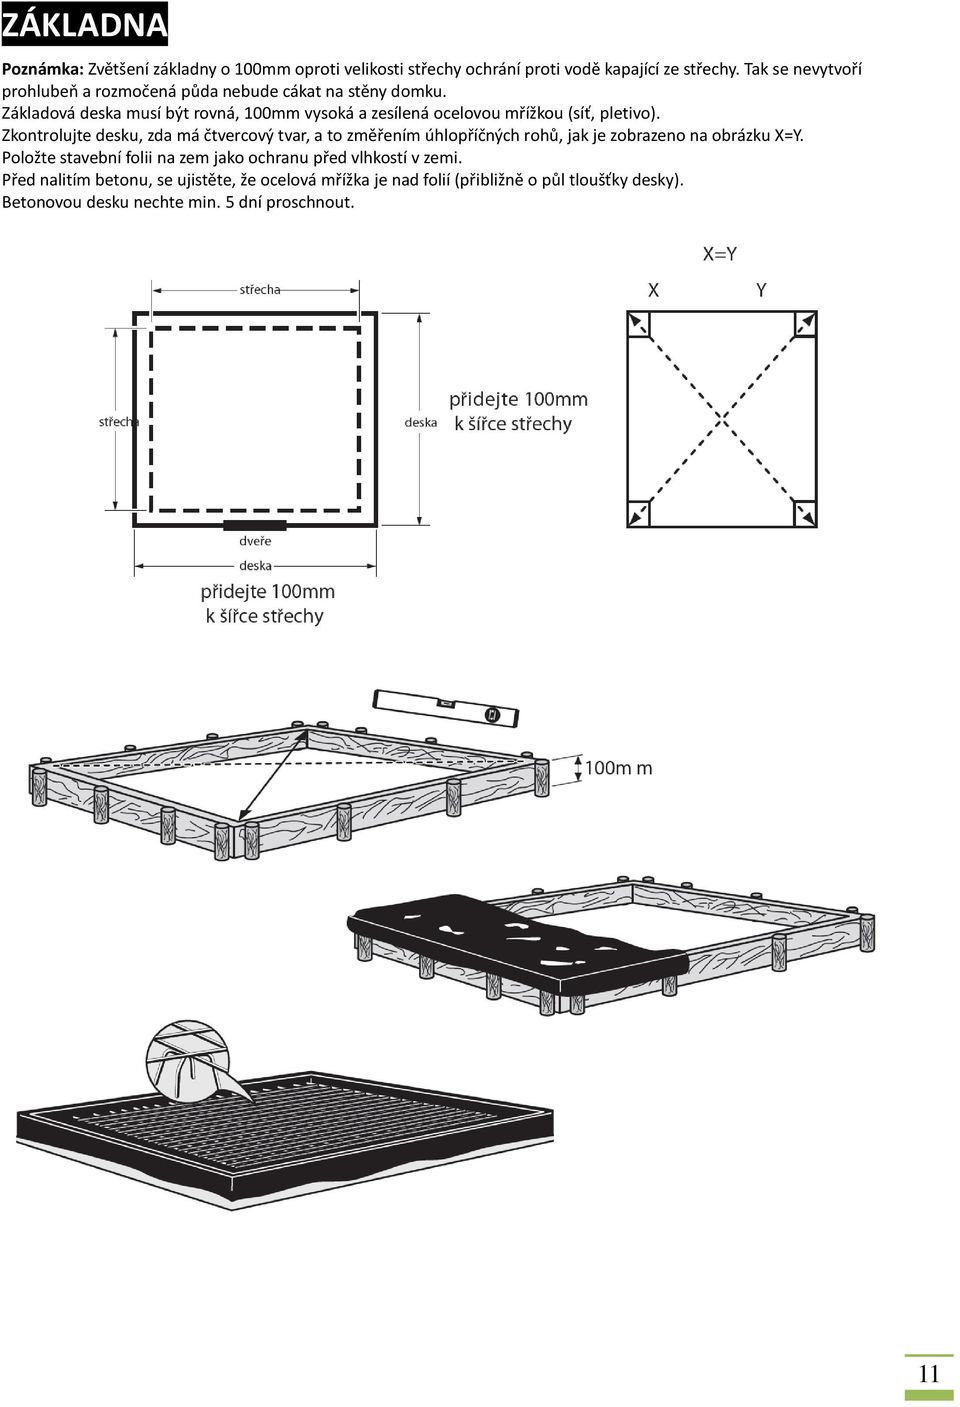 Základová deska musí být rovná, 100mm vysoká a zesílená ocelovou mřížkou (síť, pletivo).